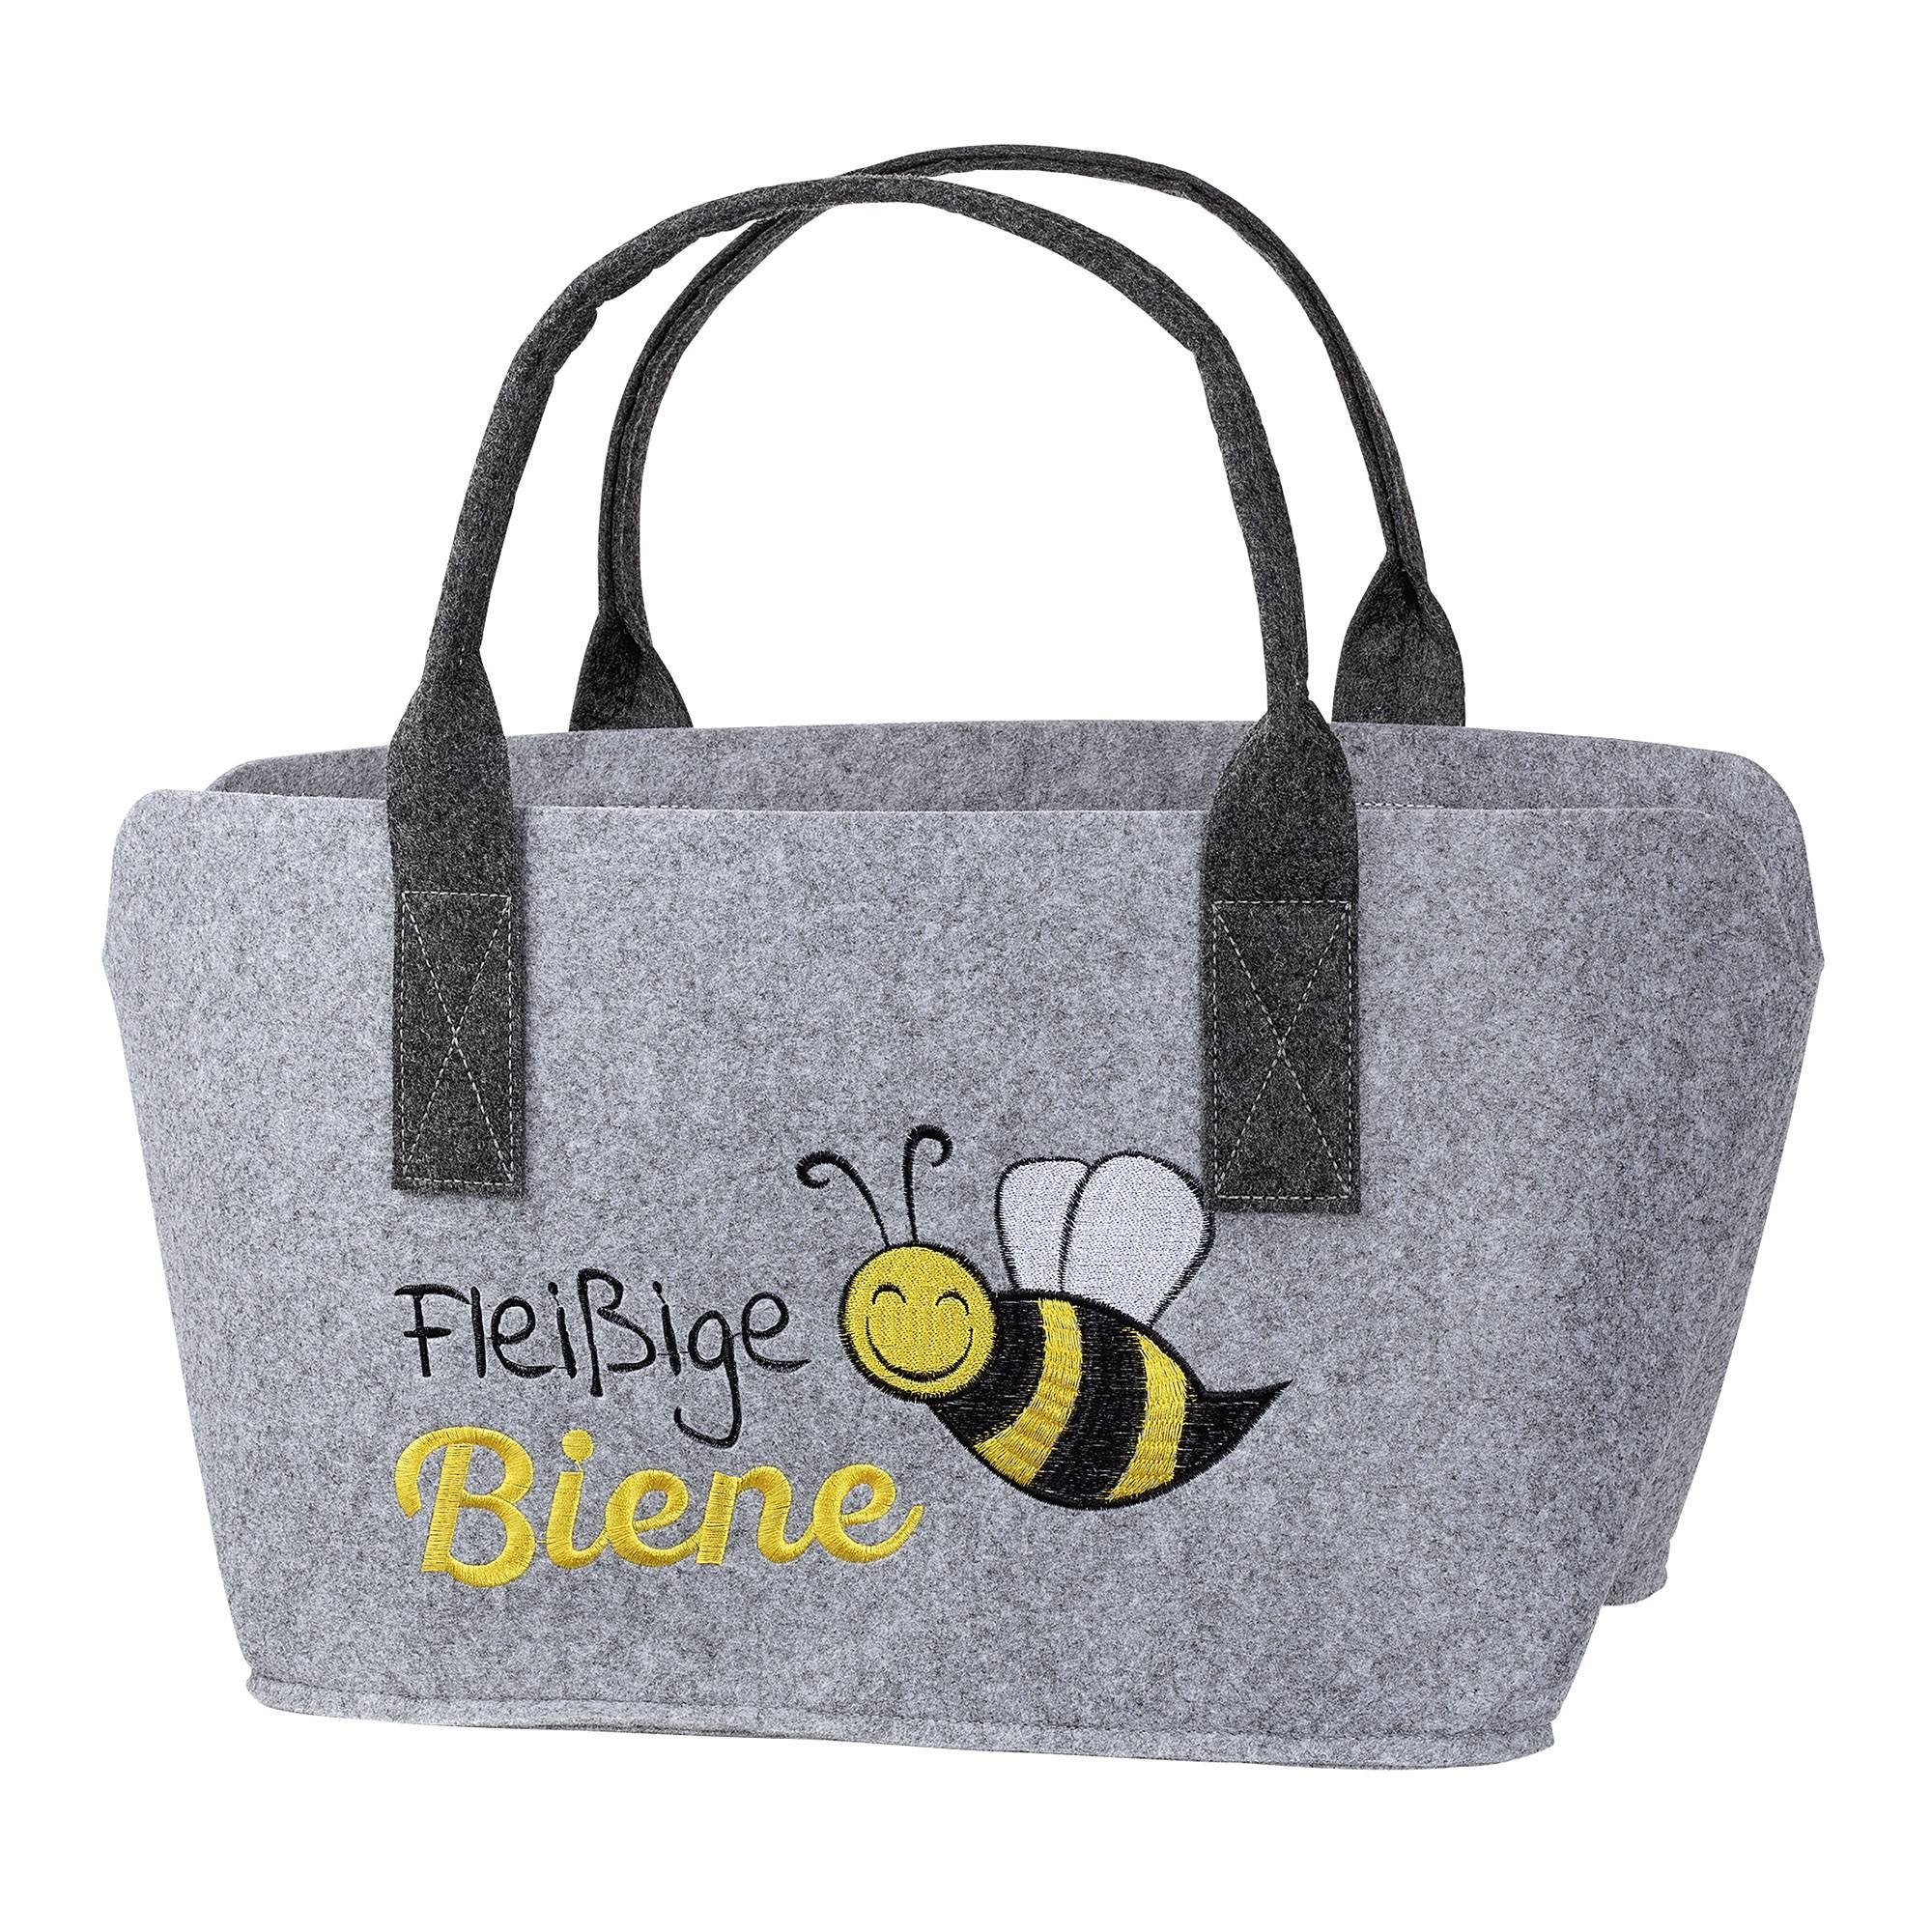 GMD Living Tragetasche BIENE, hellgrau, mit Schrift "Fleißige Biene" und Bienenmotiv, bestickt | Tragetaschen